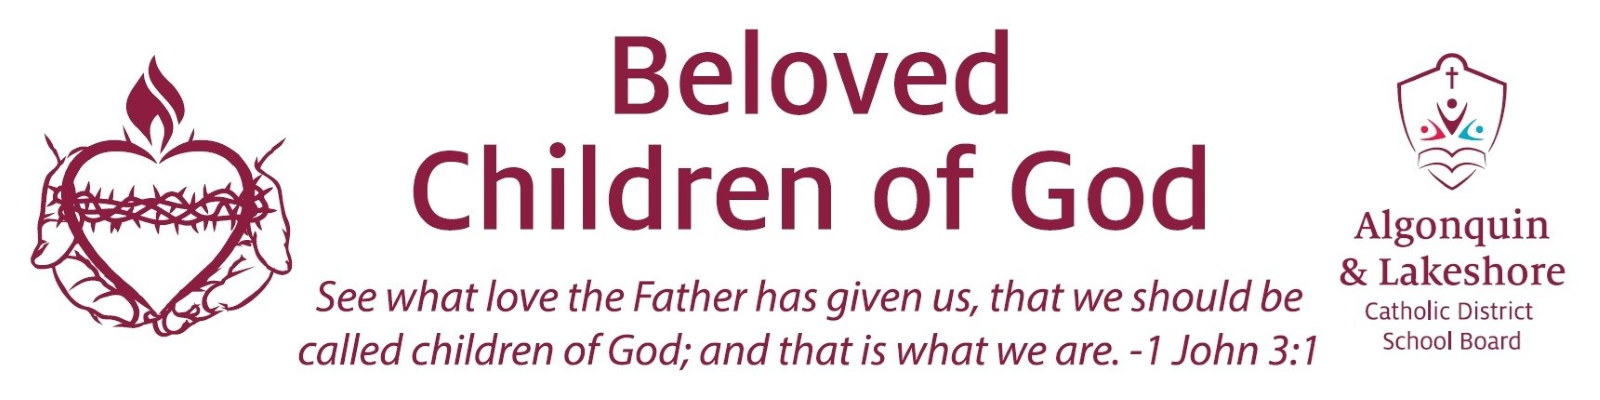 Beloved Children of God Logo.png